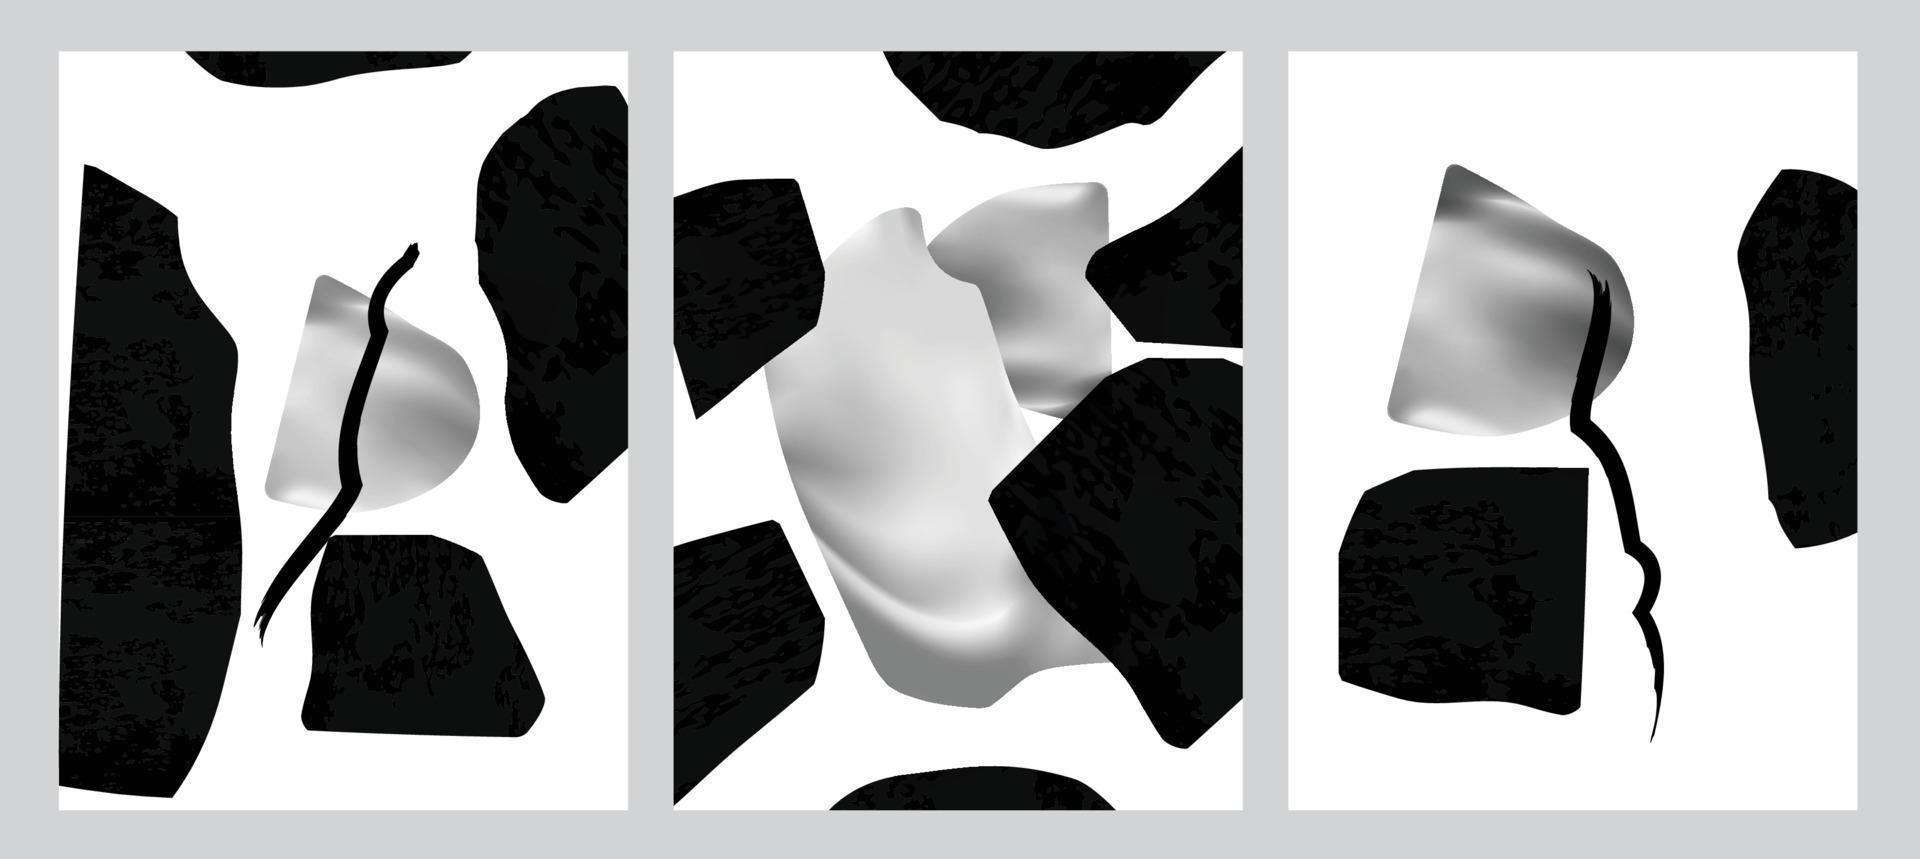 abstracte vormen nordic verf print set. scandinavische stijl poster achtergrond collectie. minimalistische eigentijdse ontwerp vectorillustratie voor wanddecoratie, home gallery, ansichtkaart, brochure cover vector